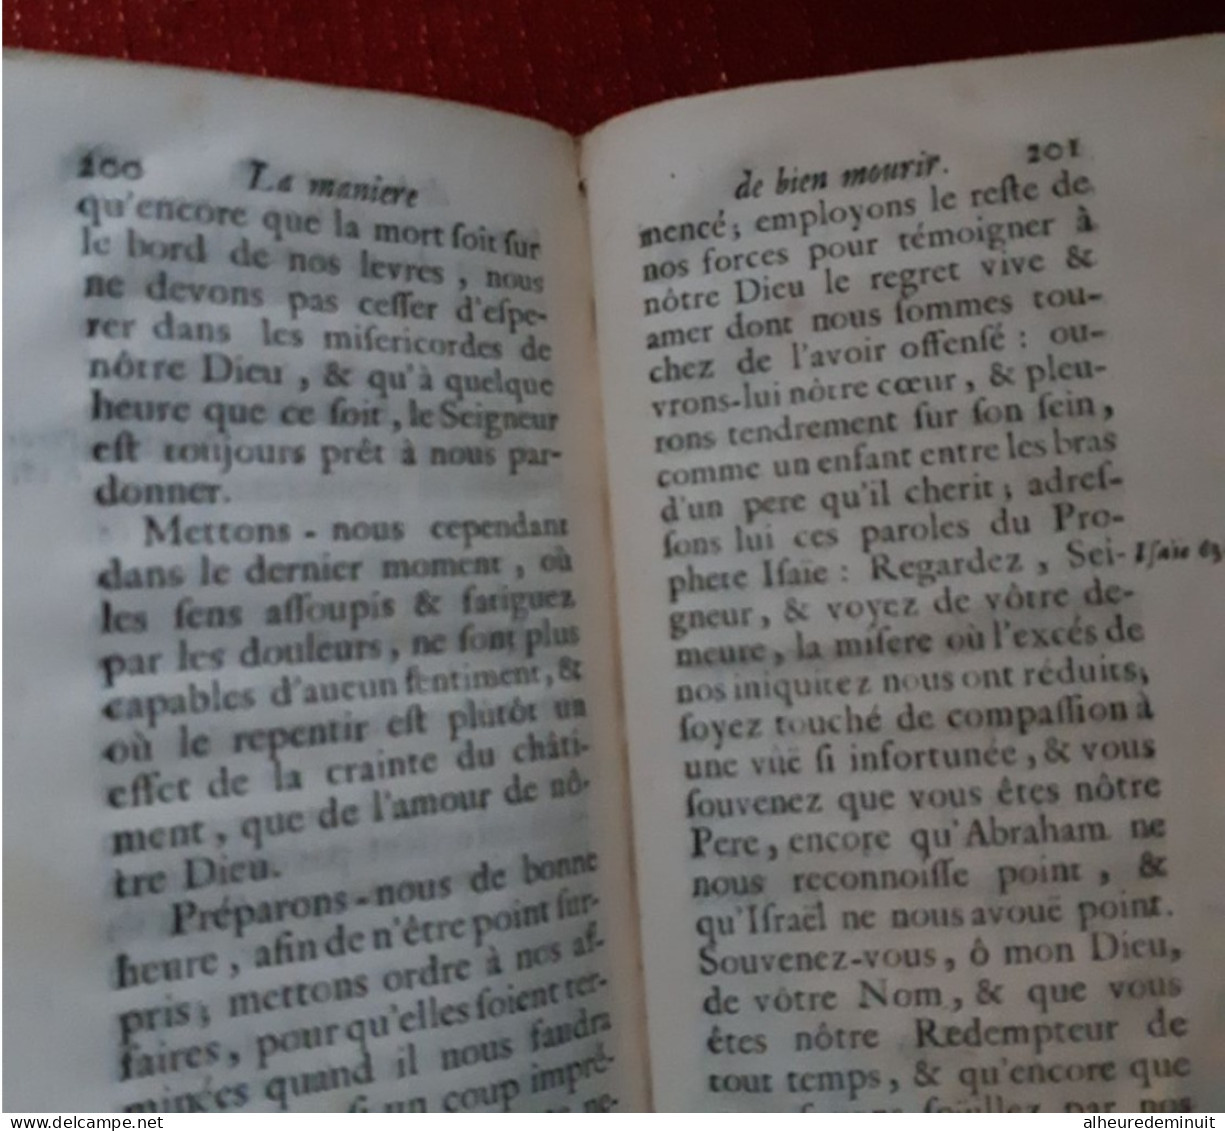 LA MANIERE DE BIEN MOURIR CONSOLATIONS CONTRE LES FRAYEURS DE LA MORT"1707"Abbé Thouvenin"son altesse royale de lorraine